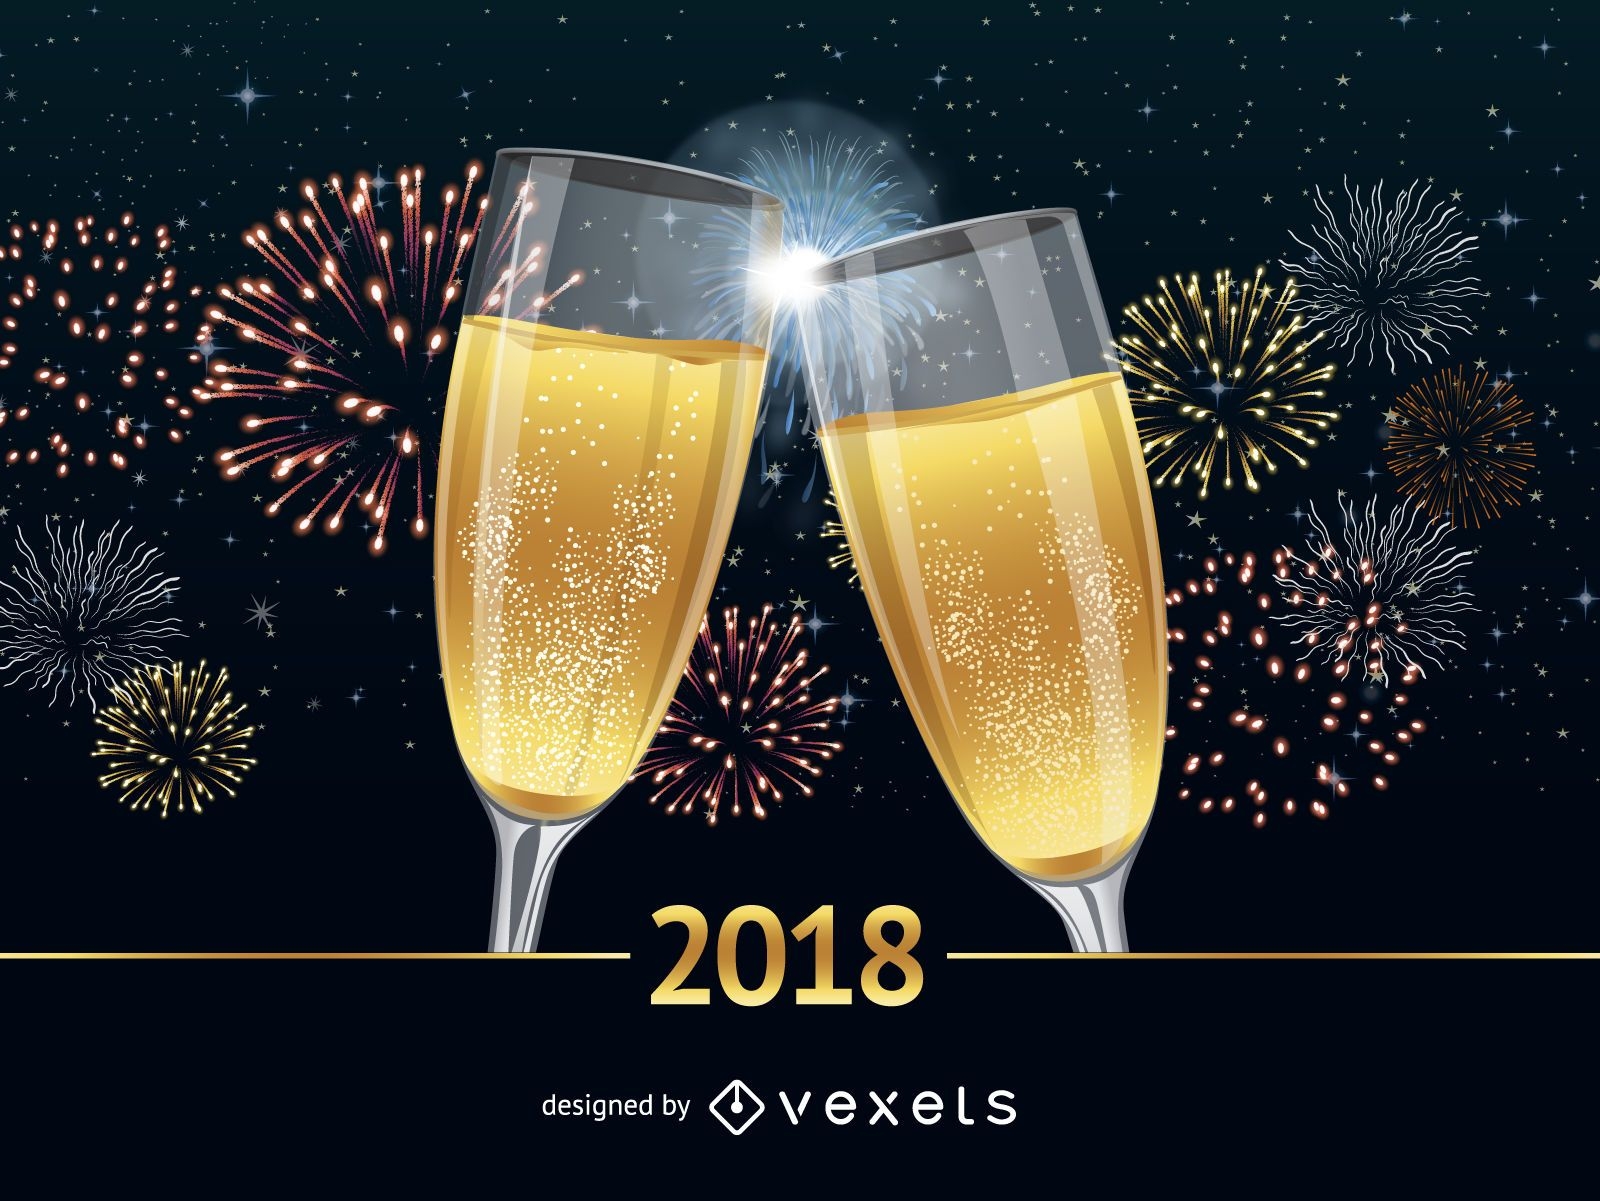 Pôster de felicitações de Ano Novo 2018